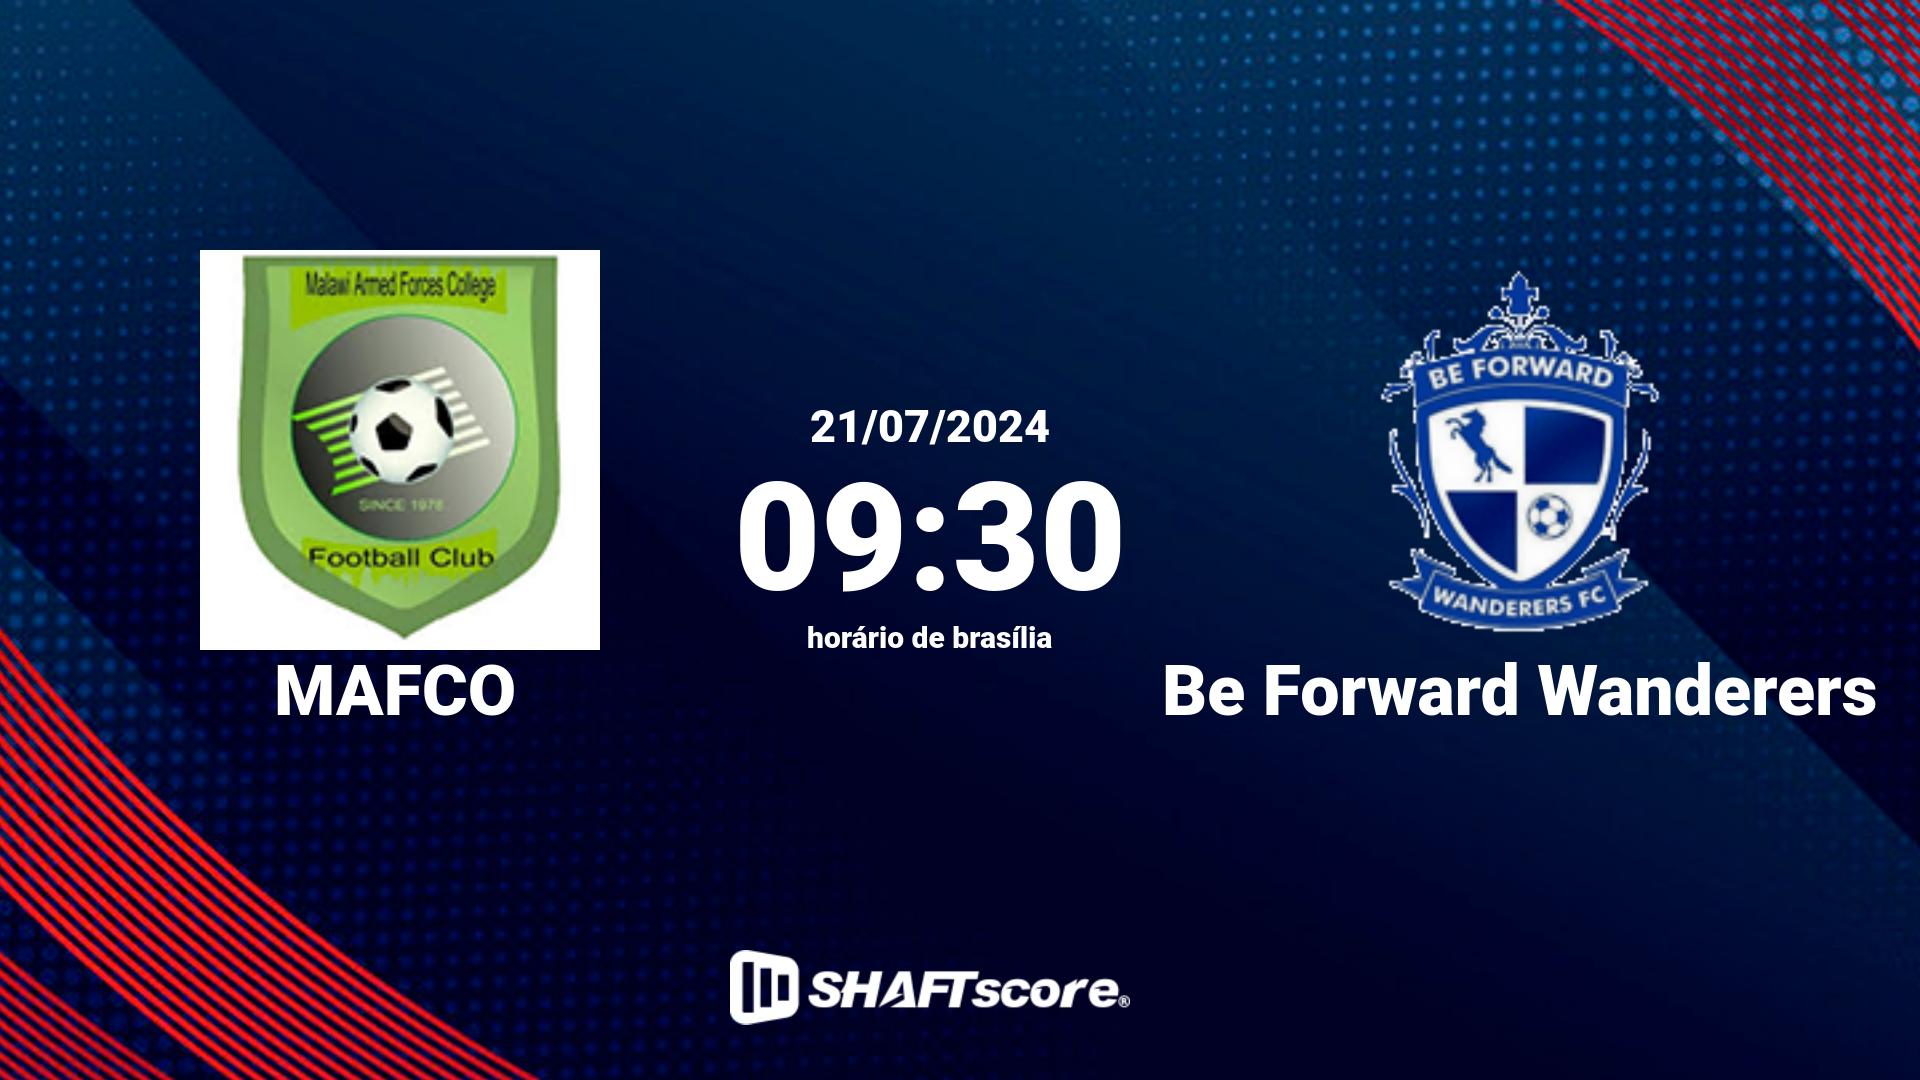 Estatísticas do jogo MAFCO vs Be Forward Wanderers 21.07 09:30